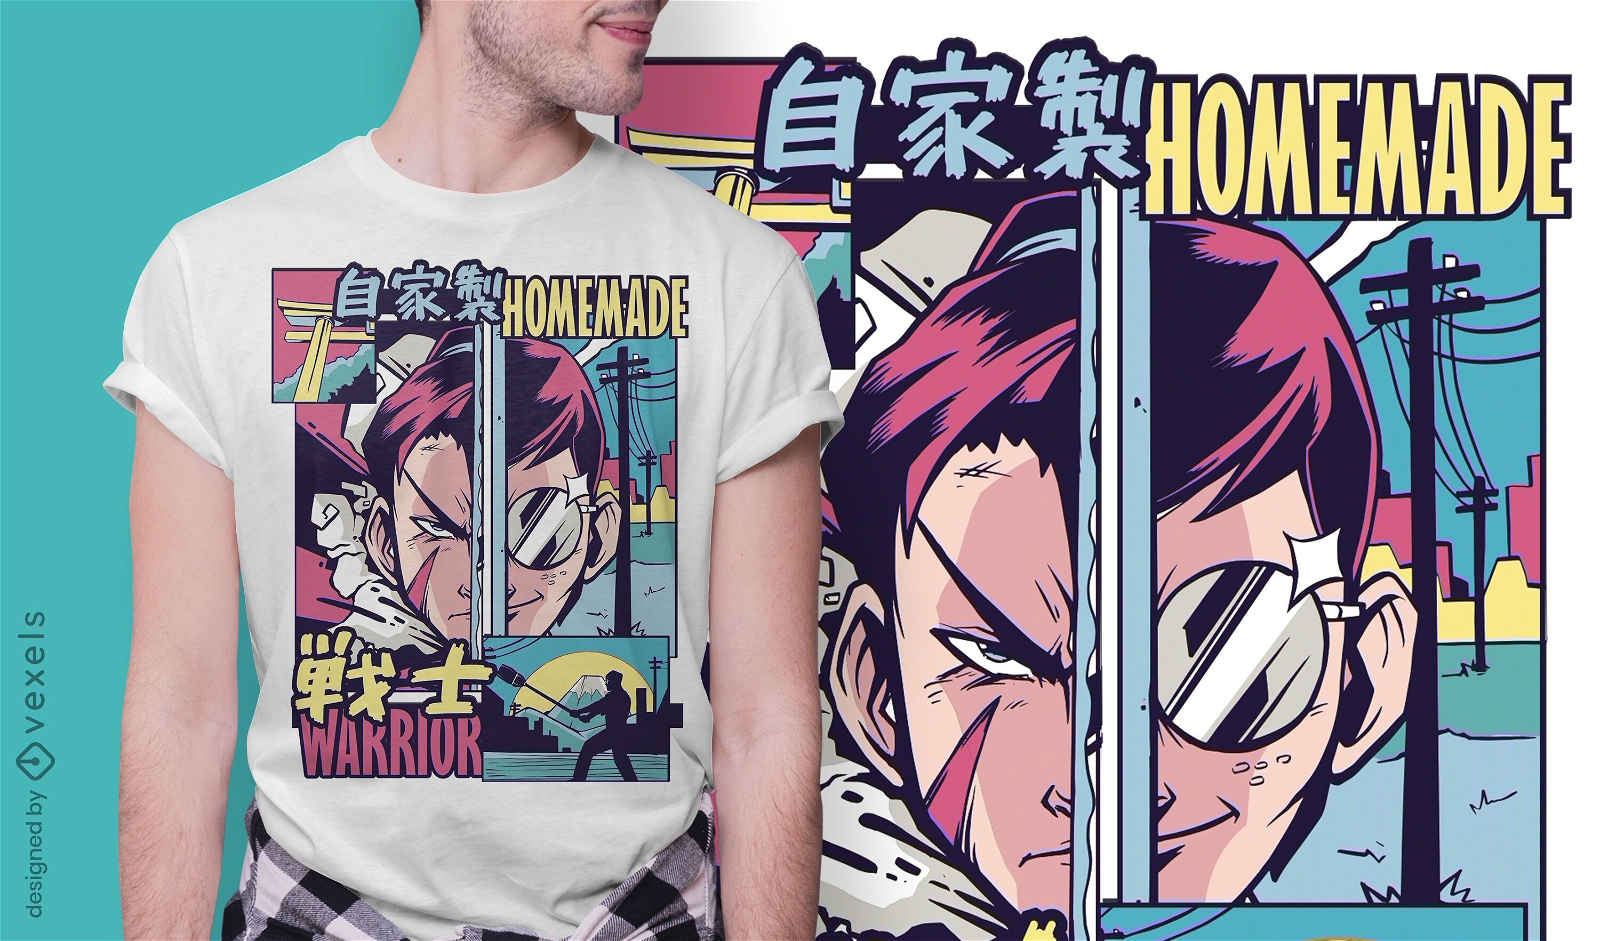 Diseño de camiseta Warrior anime vaporwave.